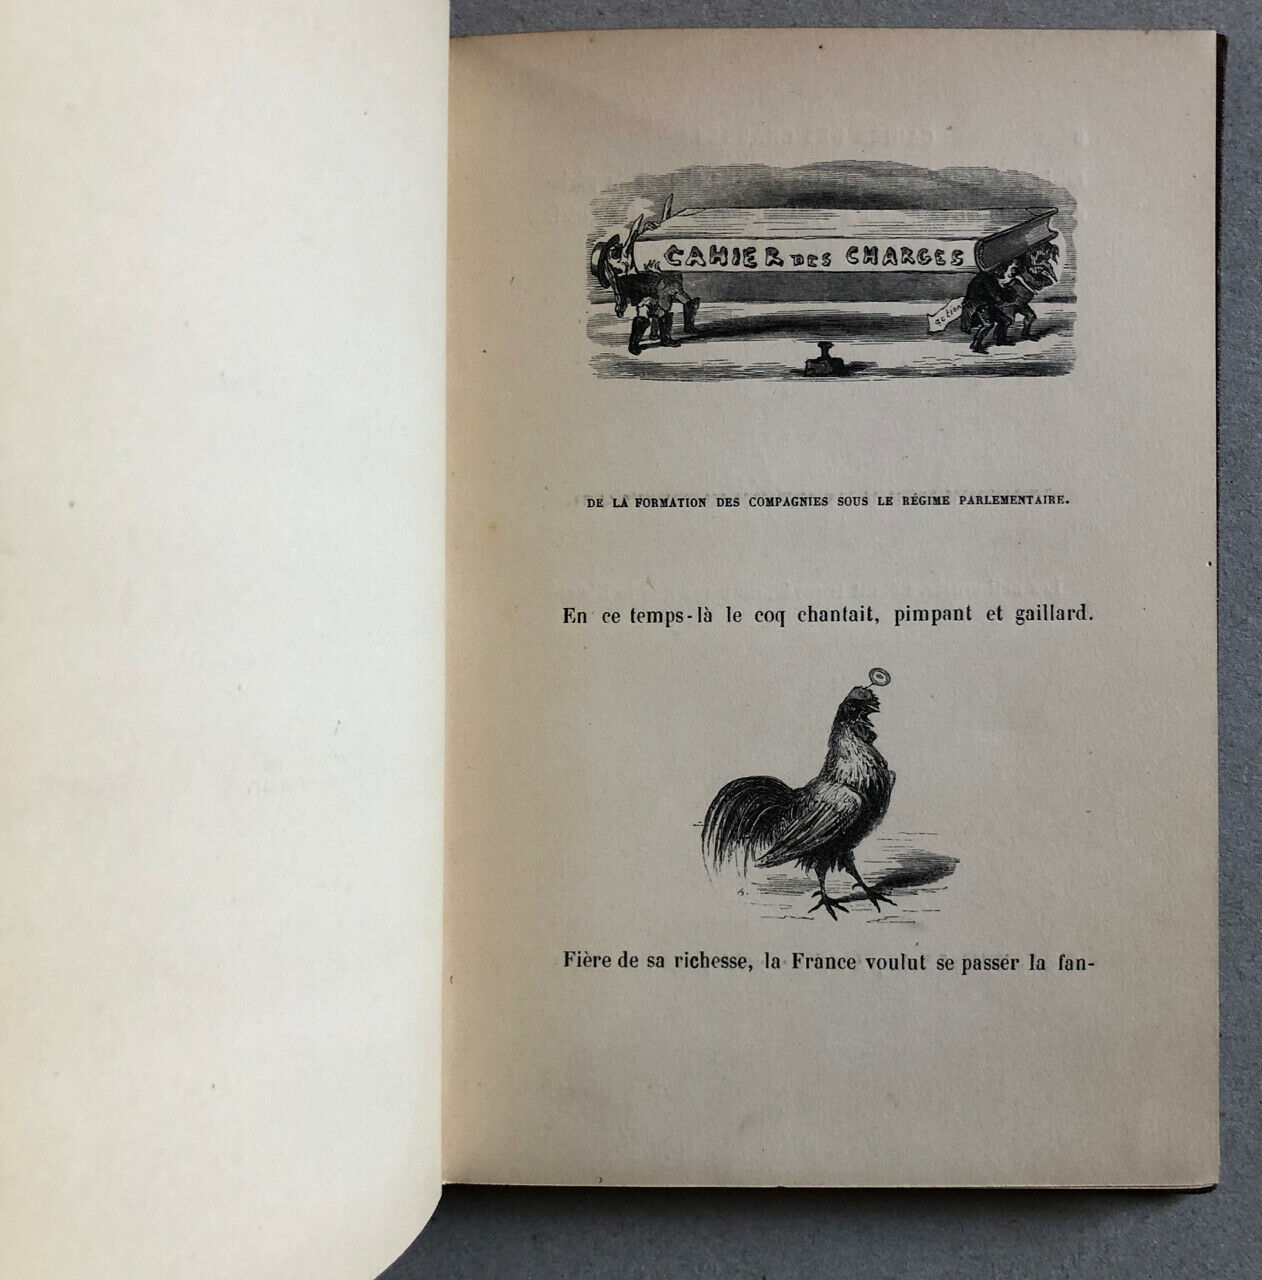 Bertall — Railway specifications — 2nd edition — Hetzel — 1847.